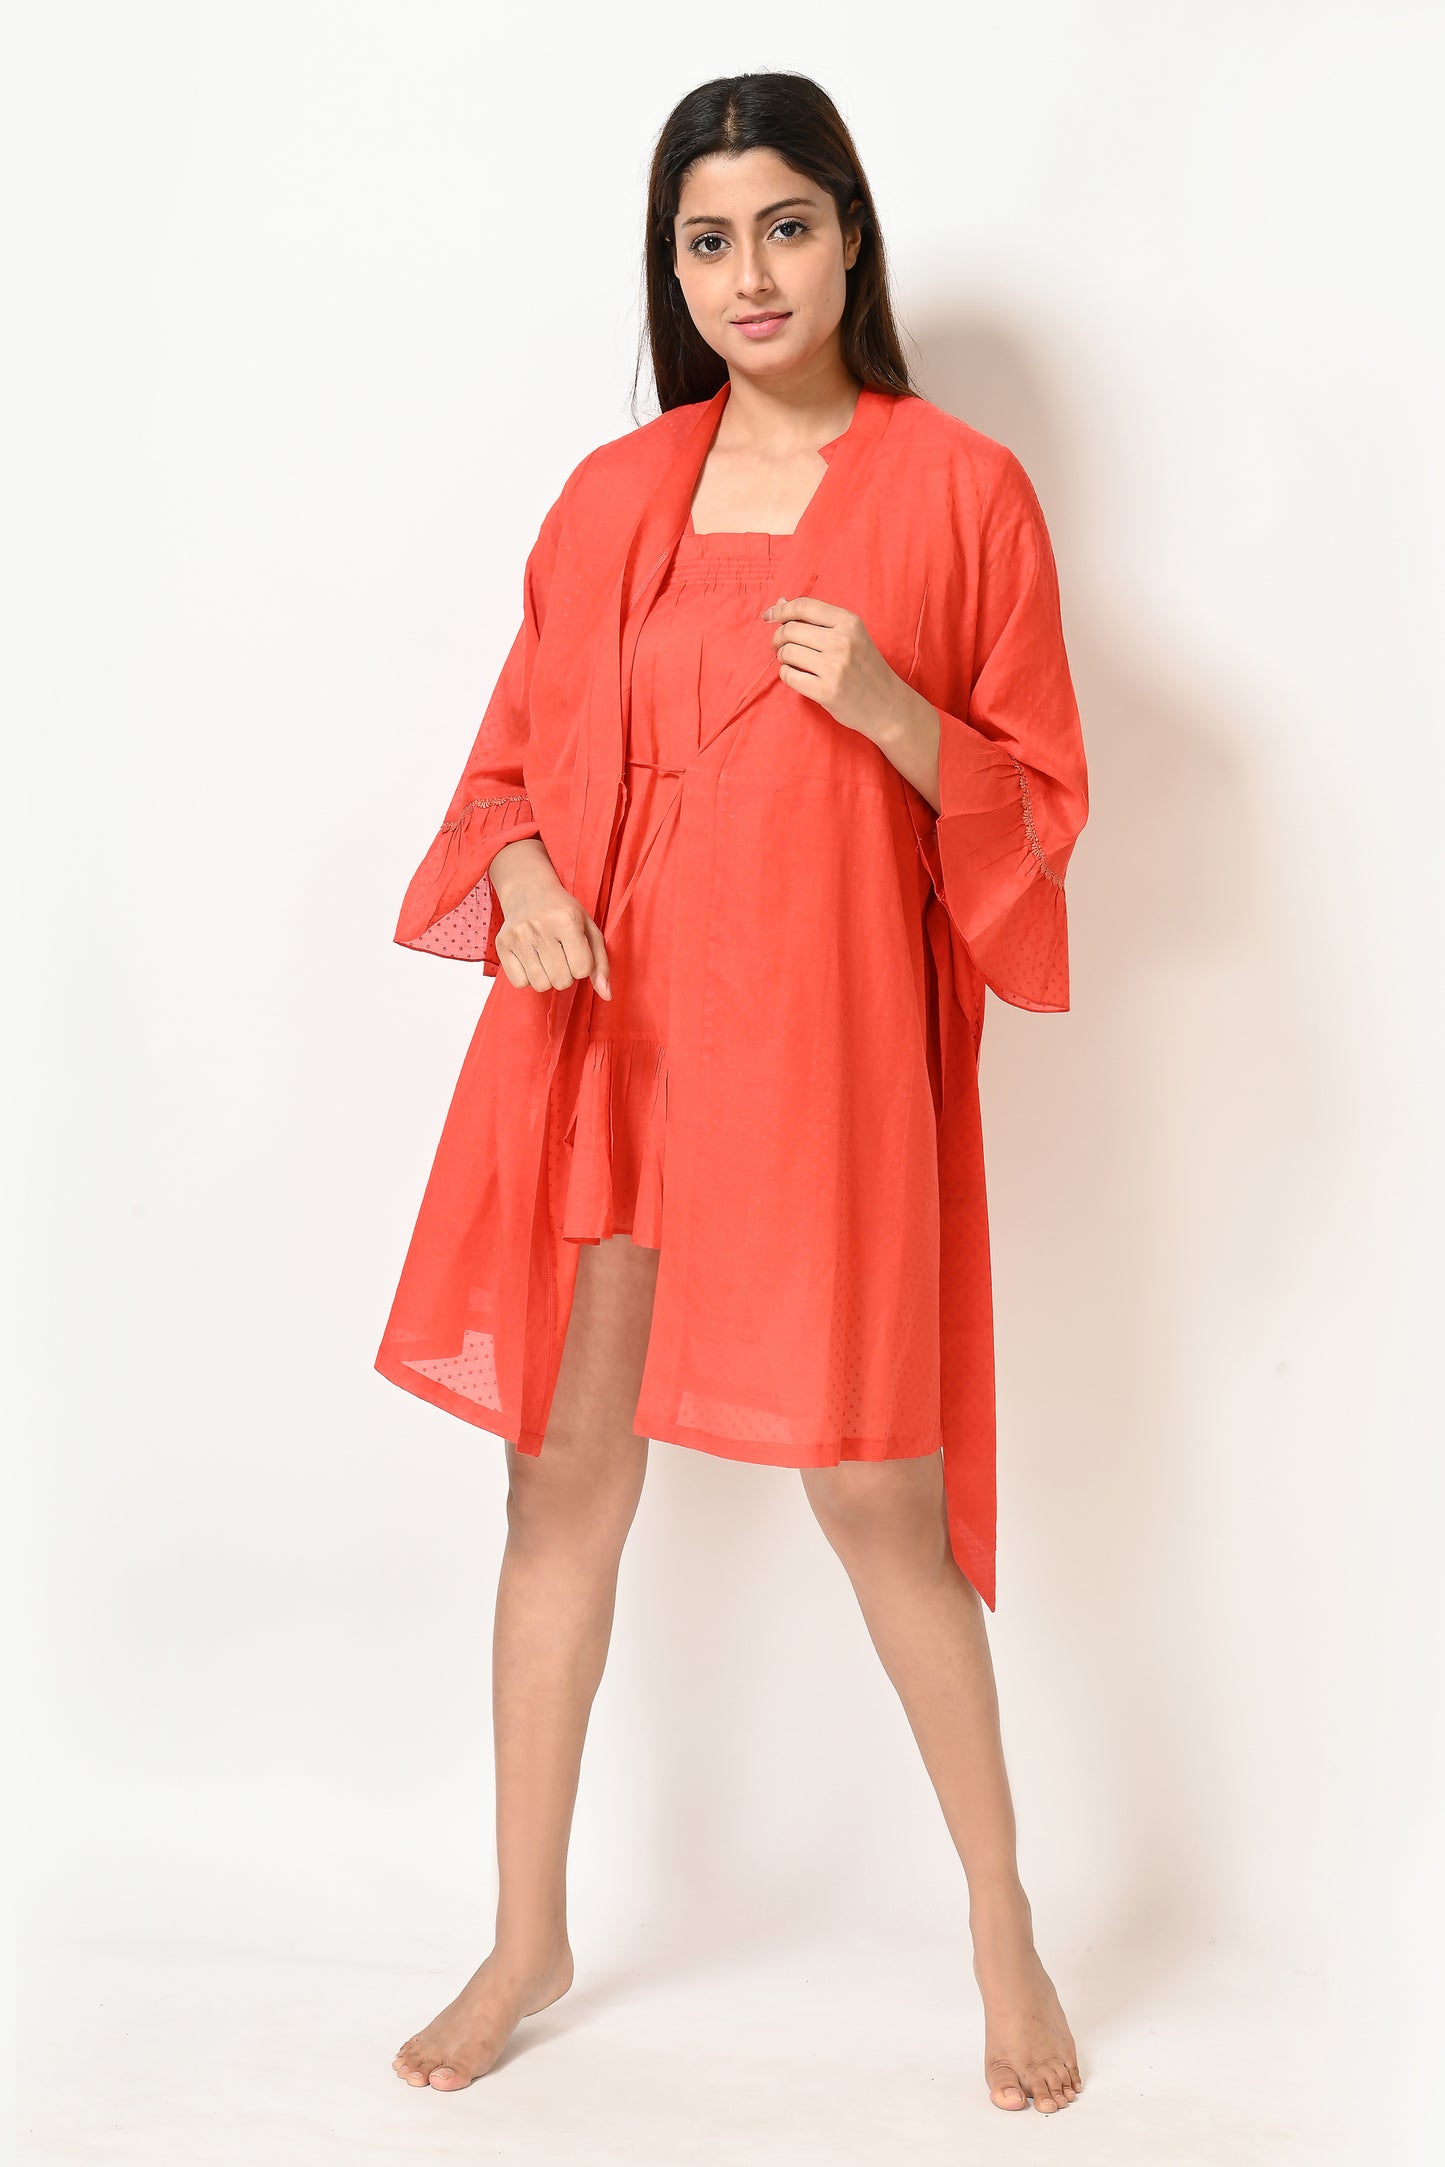 Women Orange Polka Short Gown and Sphagetti  Nightwear Set